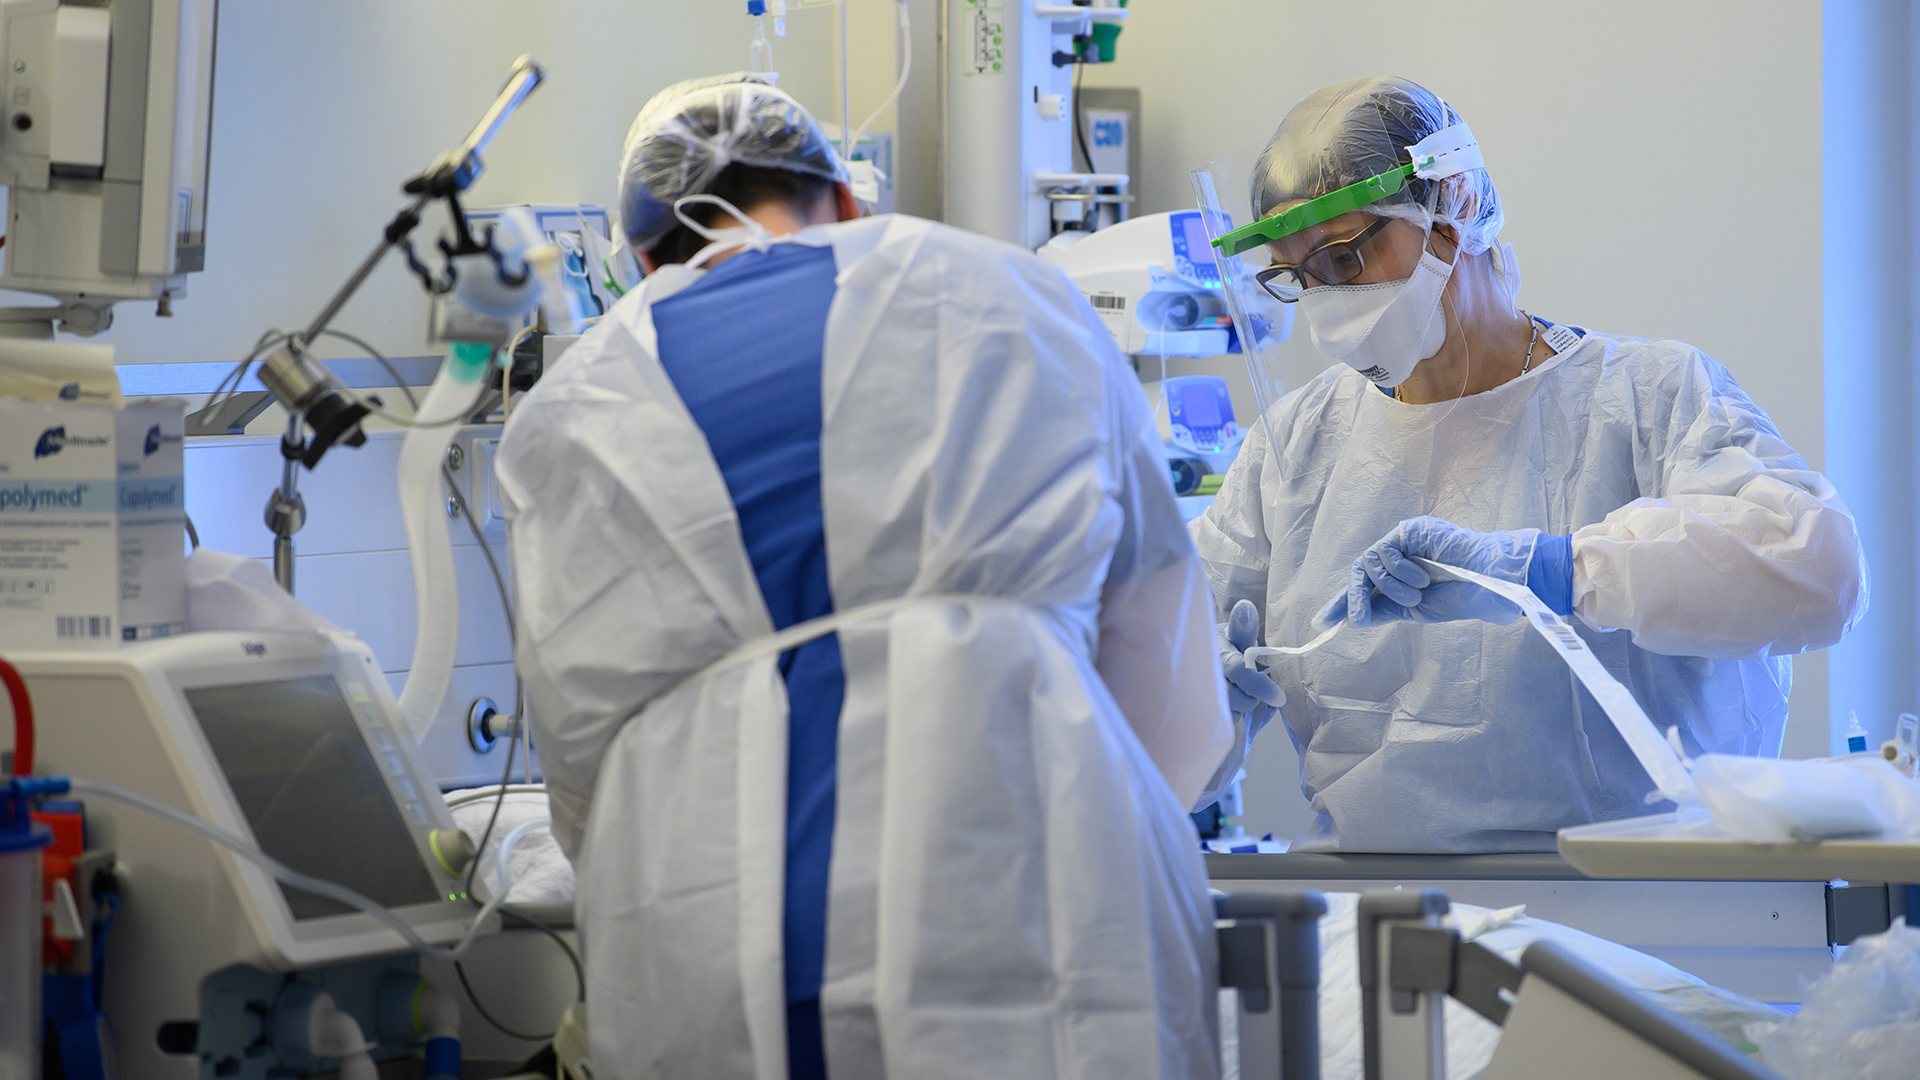  Intensivpflegerinnen sind auf der Covid-19-Intensivstation mit der Versorgung von Corona-Patienten beschäftigt. | dpa